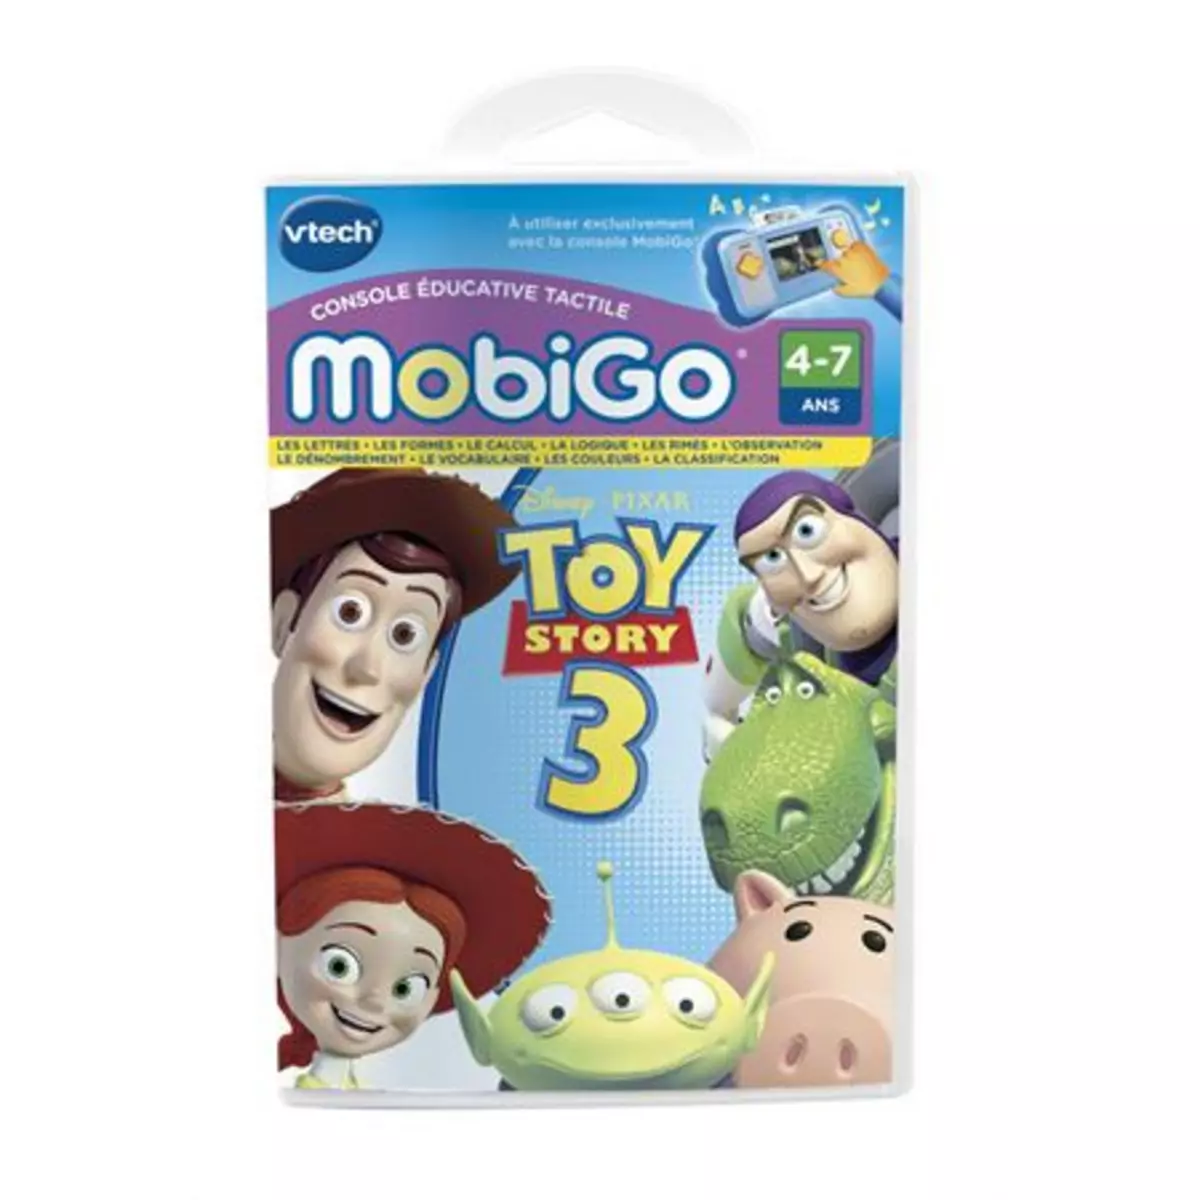 VTECH Jeu Mobigo Toy story